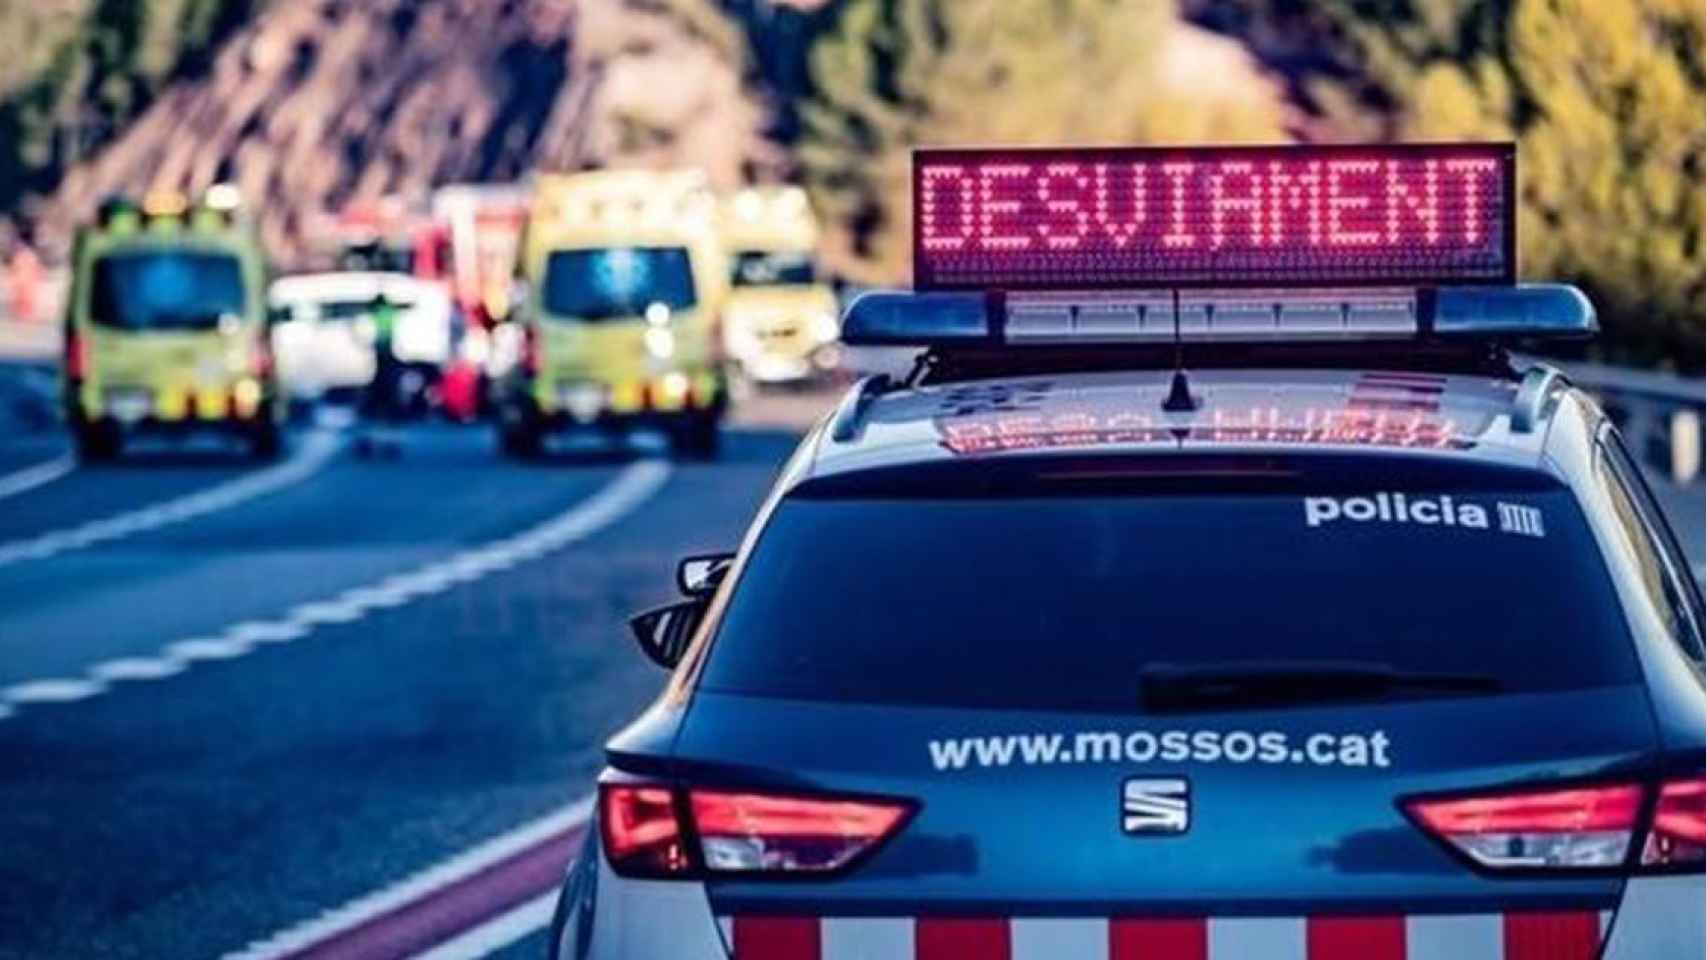 Un coche de Mossos d'Esquadra interviene en un accidente de tráfico, en una imagen de archivo / MOSSOS